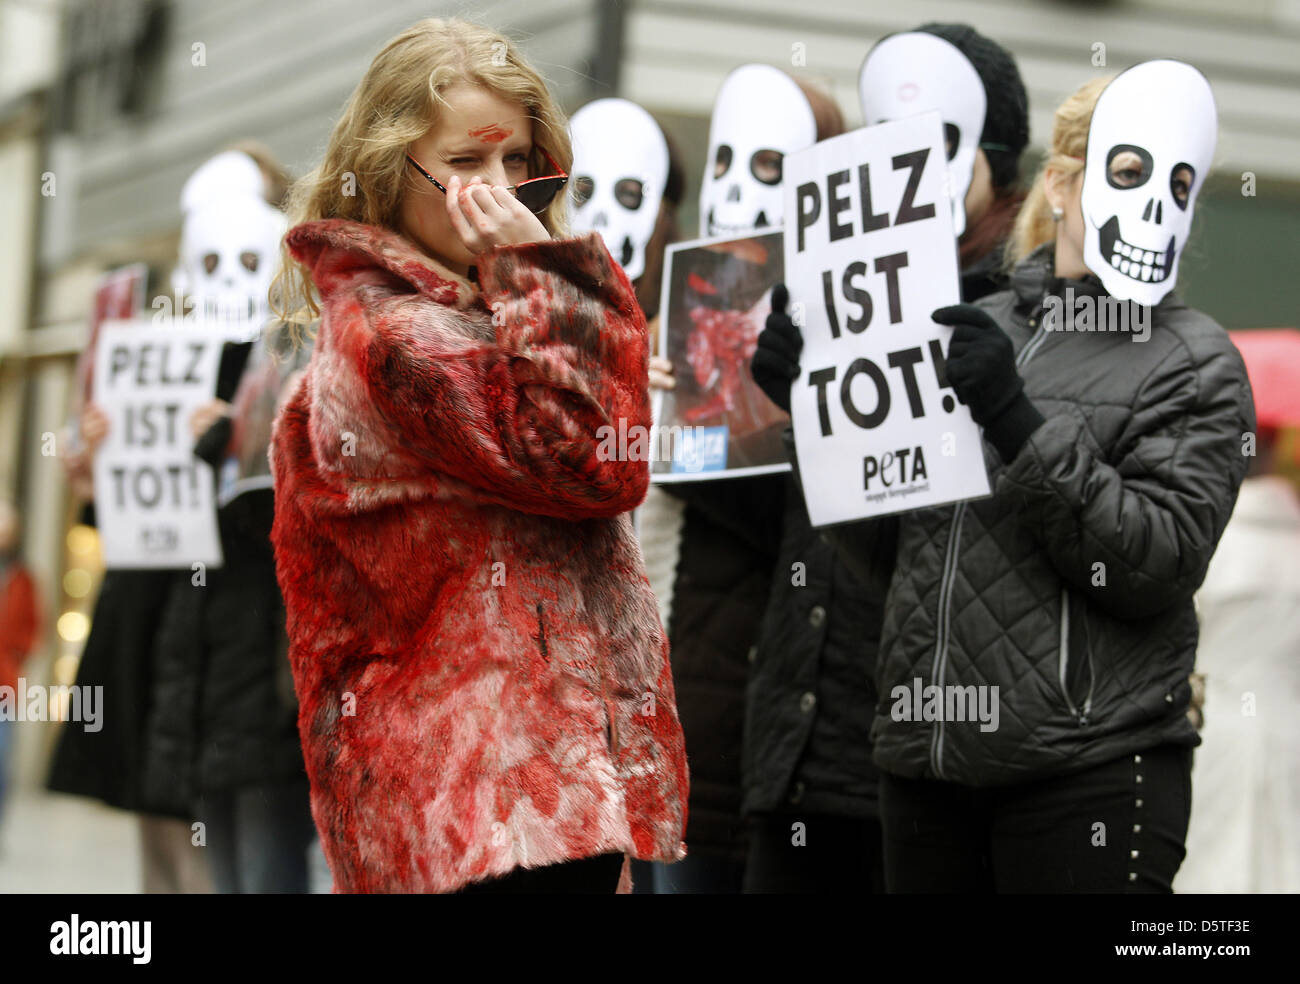 Mit blutigen Pelzmänteln protestieren PETA-Aktivistinnen am 23.11.2012 in Düsseldorf (Nordrhein-Westfalen) gegen das Tragen von Pelzmänteln. Anlass der Aktion auf Düsseldorfs Nobeleinkaufsmeile ist der 'Fur-Free-Freiday', der Pelzfreie Freitag.   Foto: Roland Weihrauch/dpa Stock Photo